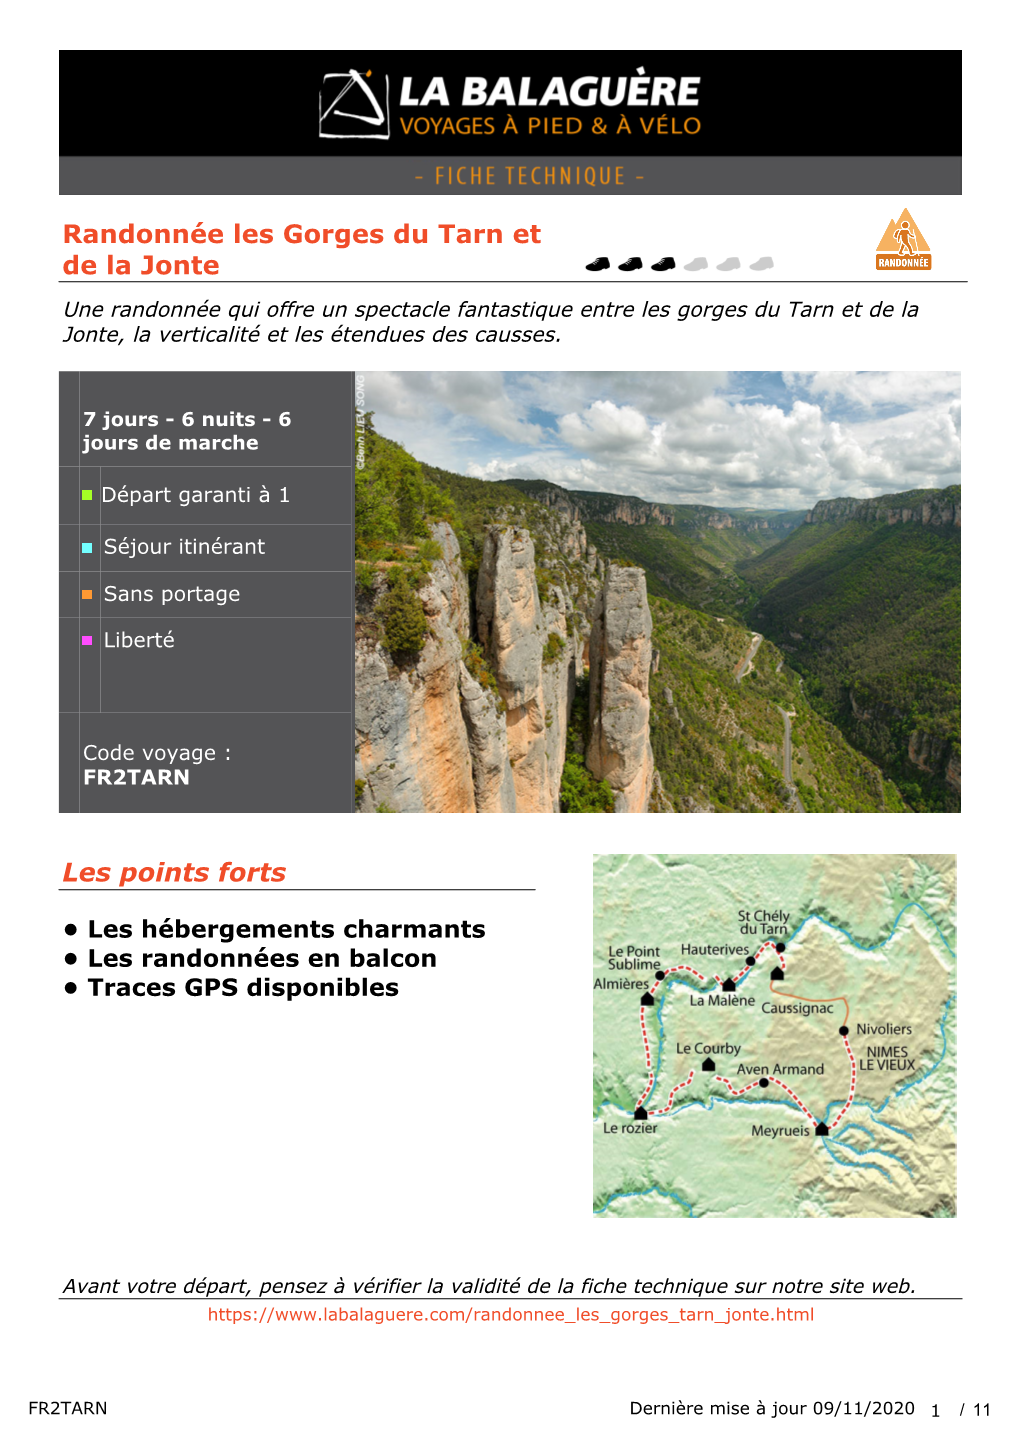 Randonnée Les Gorges Du Tarn Et De La Jonte Les Points Forts